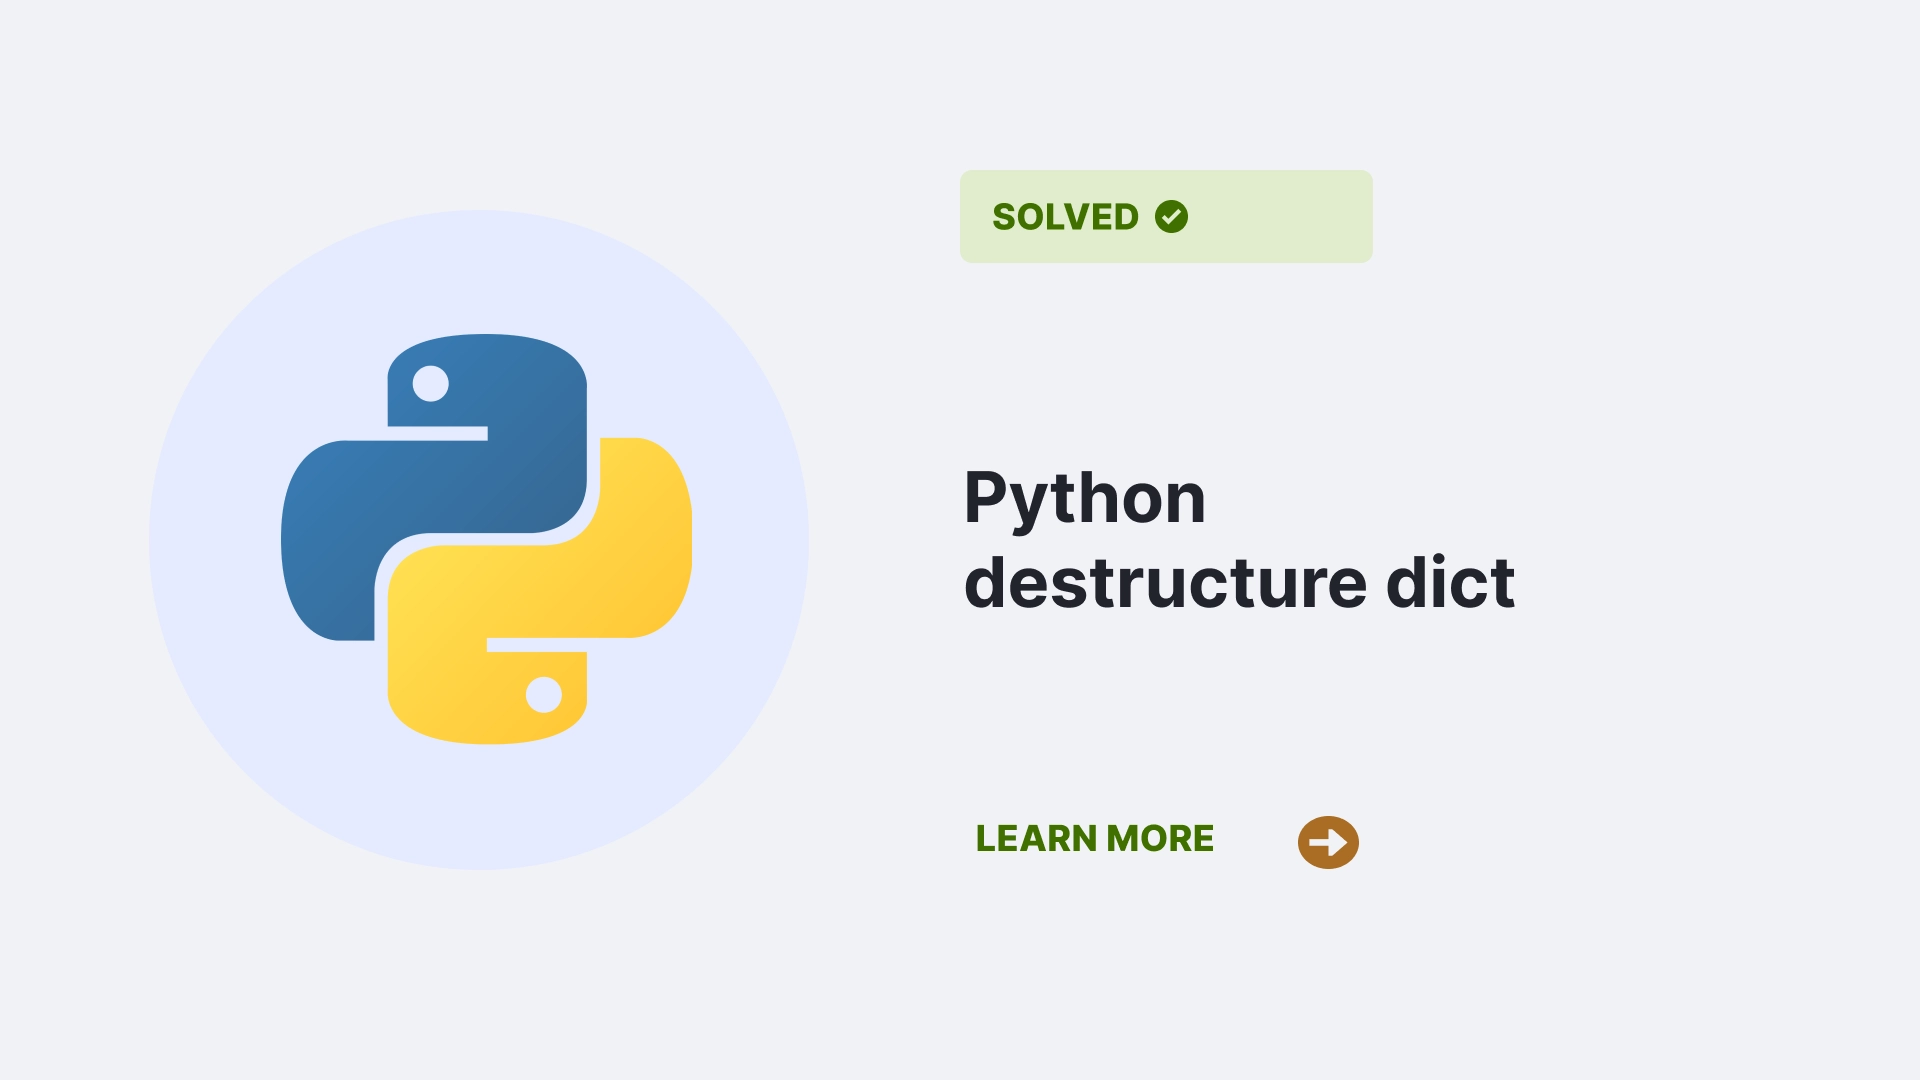 Python destructure dict